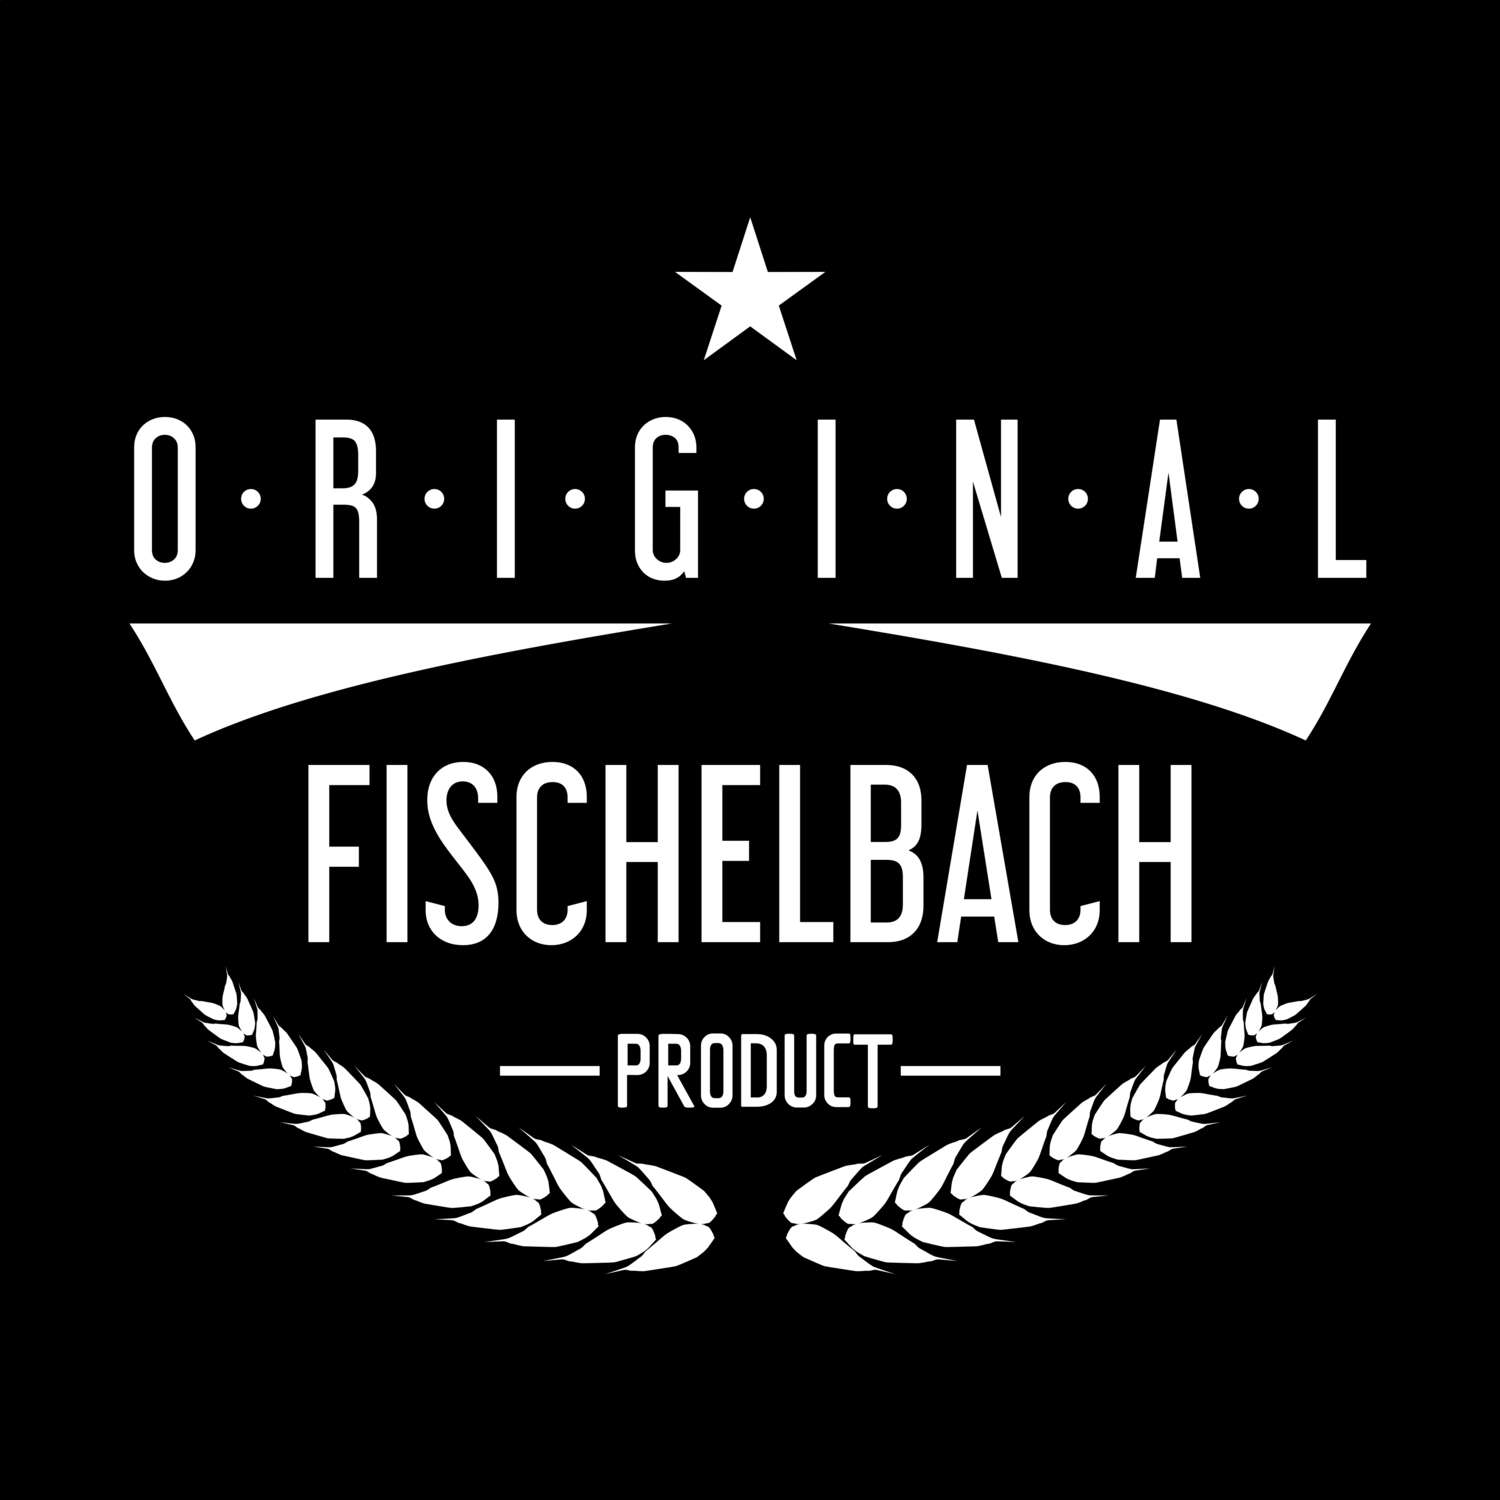 Fischelbach T-Shirt »Original Product«